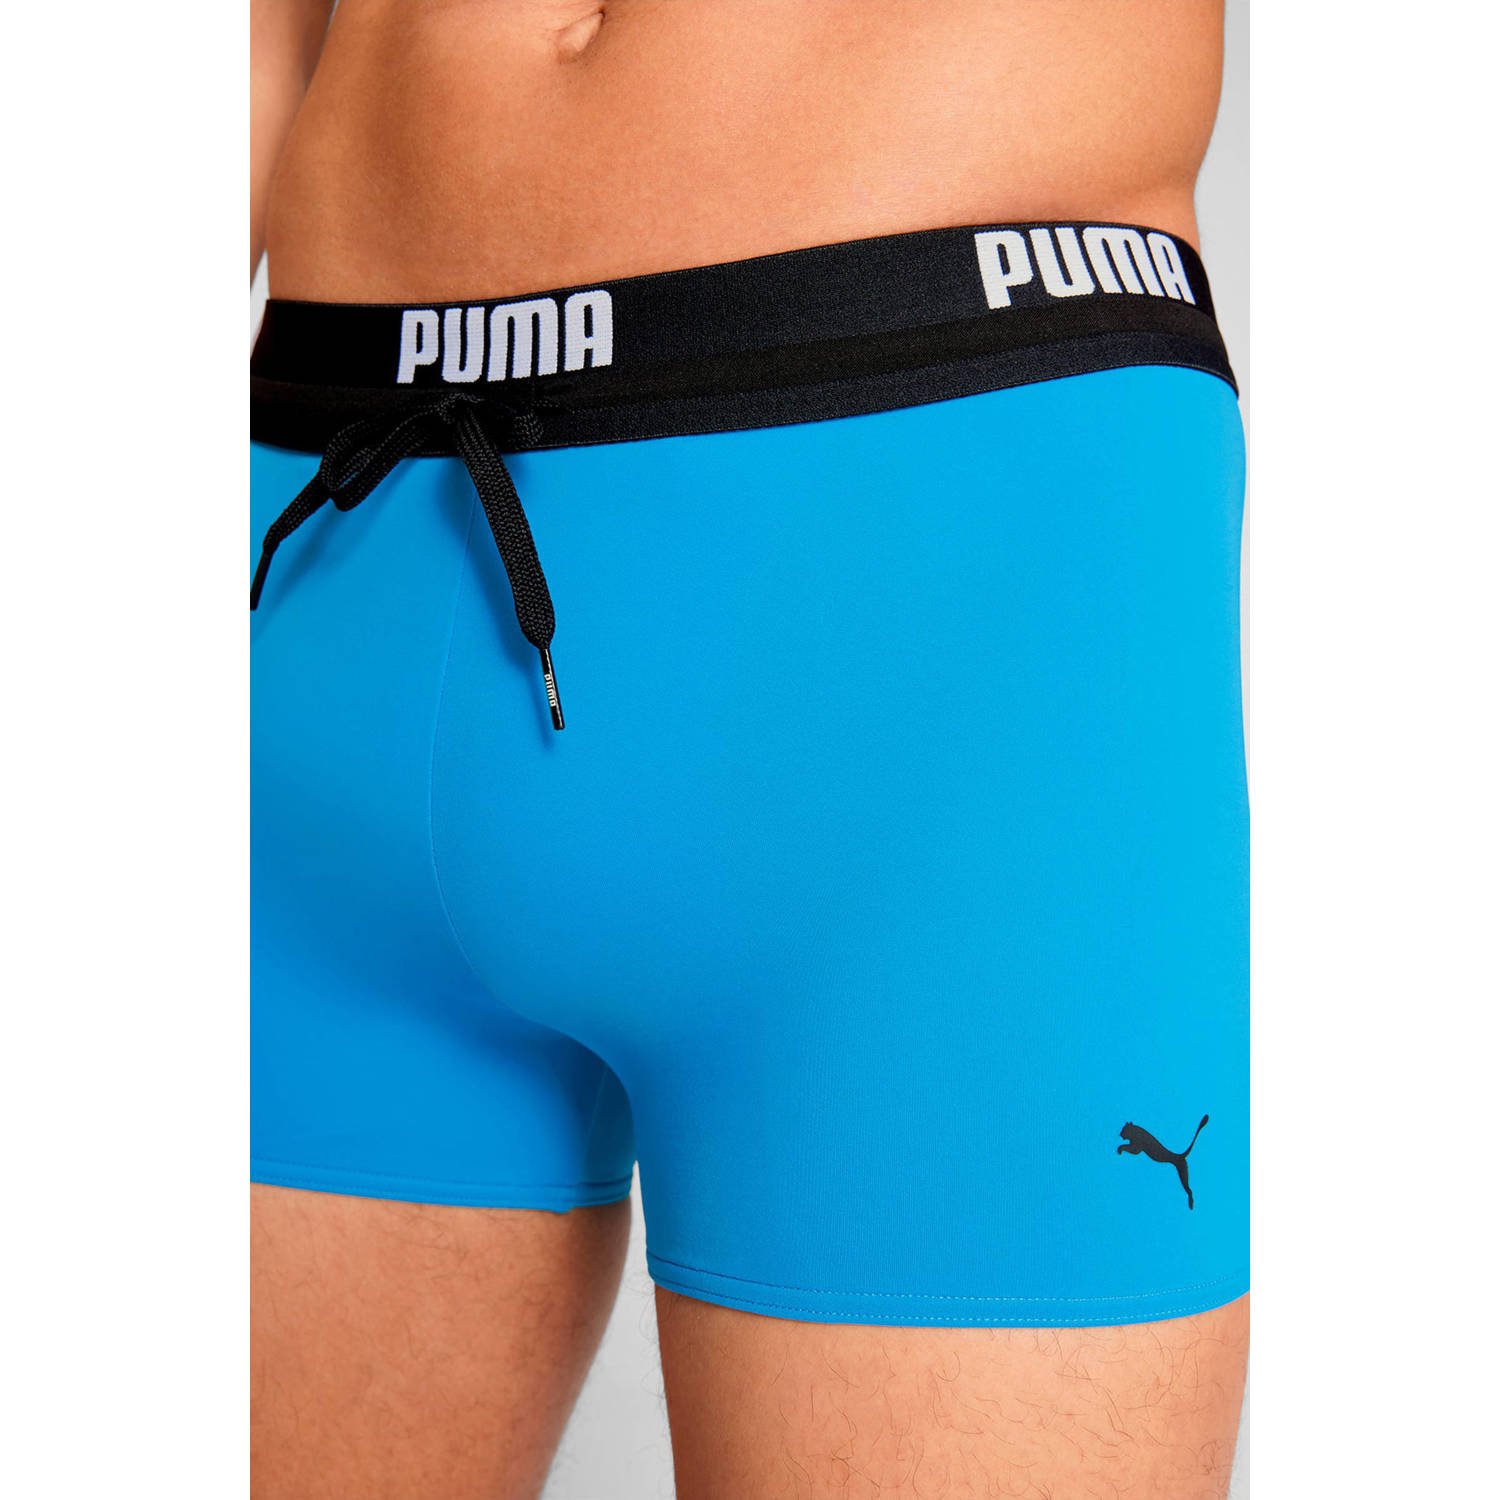 Puma zwemboxer blauw